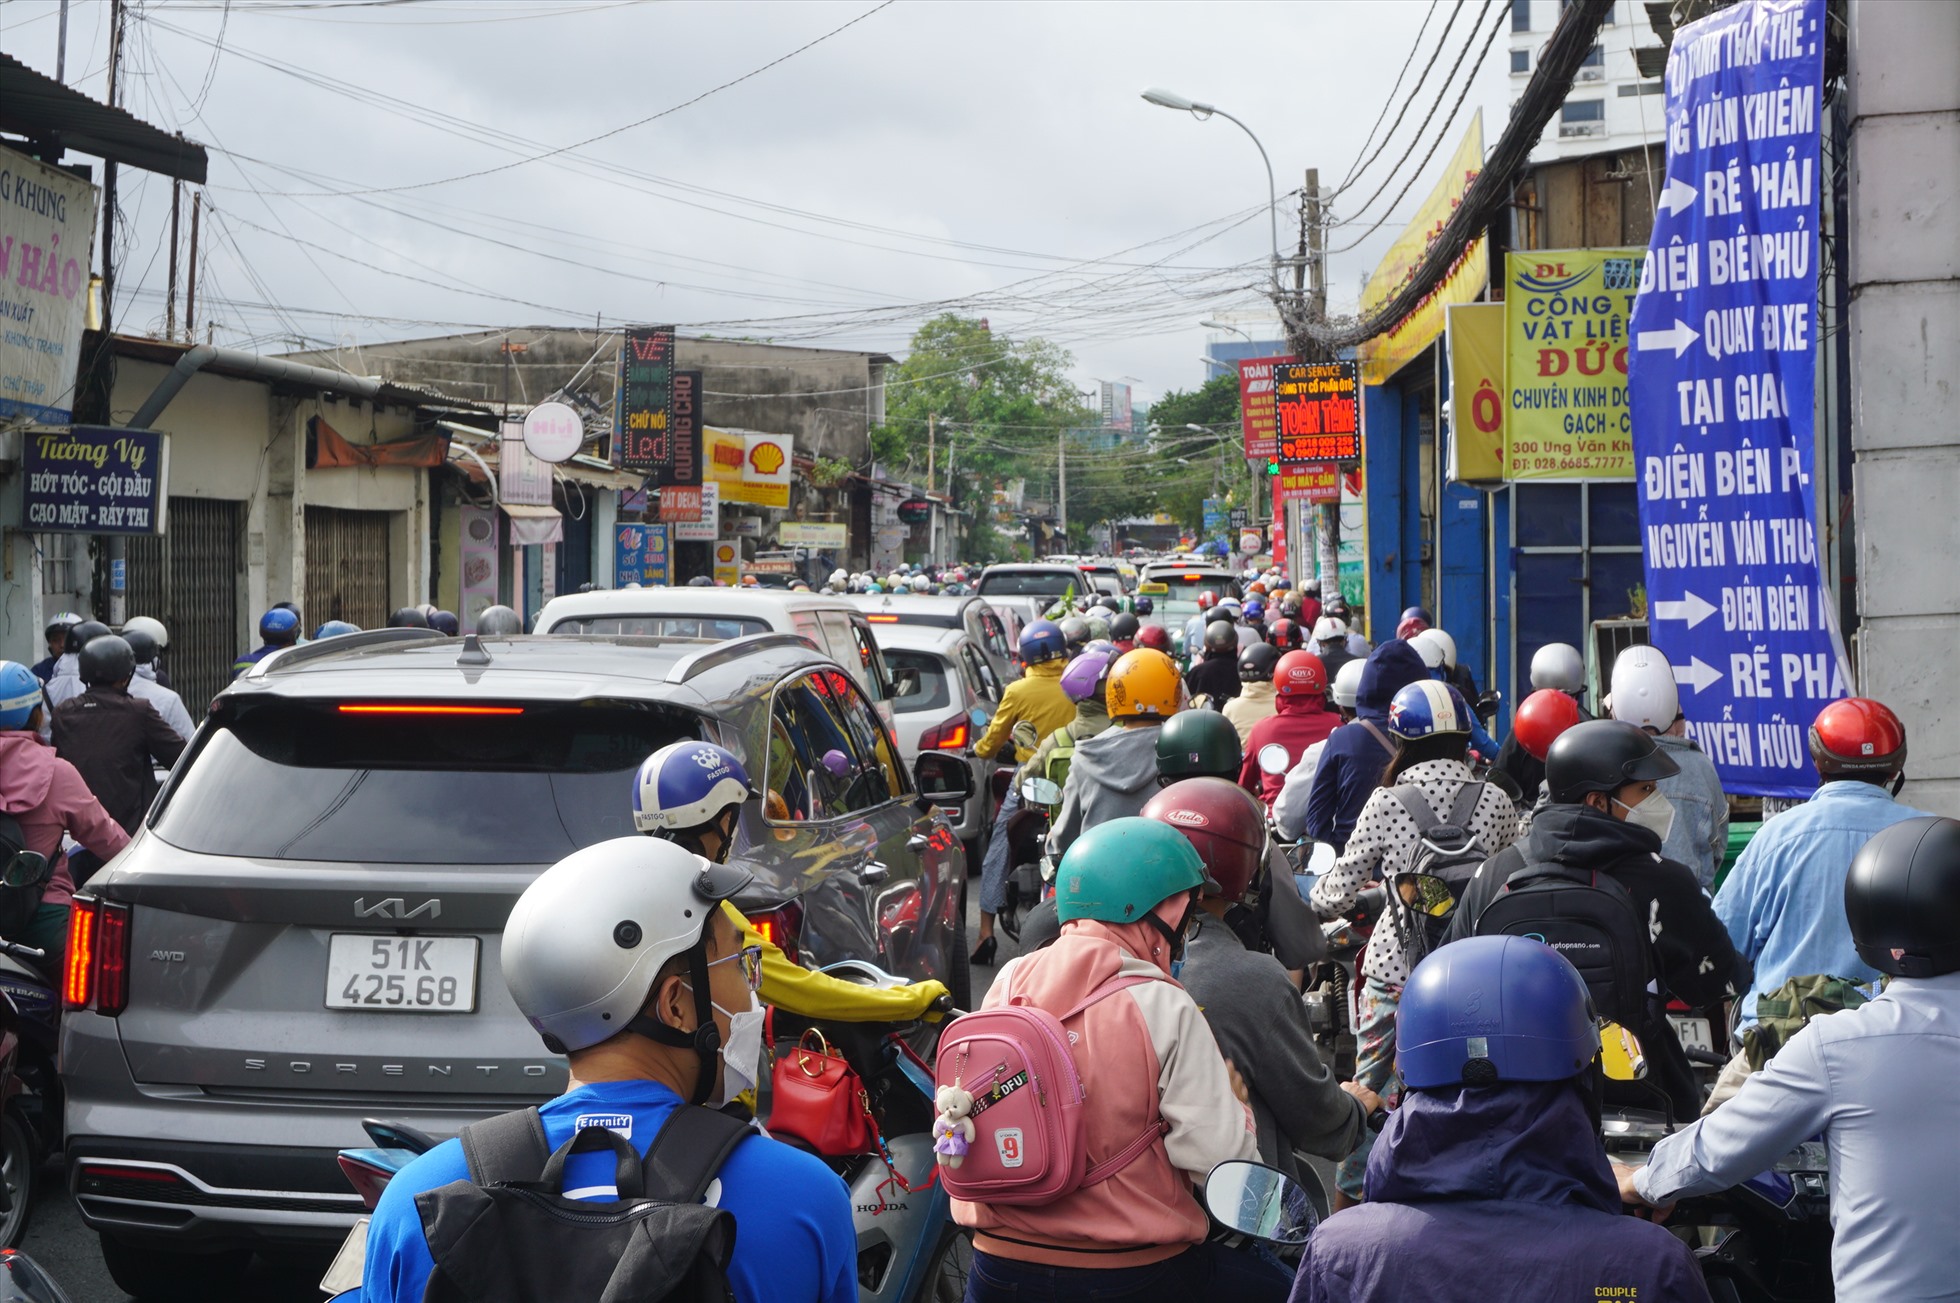 Trên đường Ung Văn Khiêm, xe máy ken đặc trên đường. Người dân đi làm buổi sáng bơ phờ, mệt mỏi vì phải chờ đợi trong dòng kẹt xe quá lâu, có người bị kẹt hơn 20 phút vẫn chưa thoát ra được.